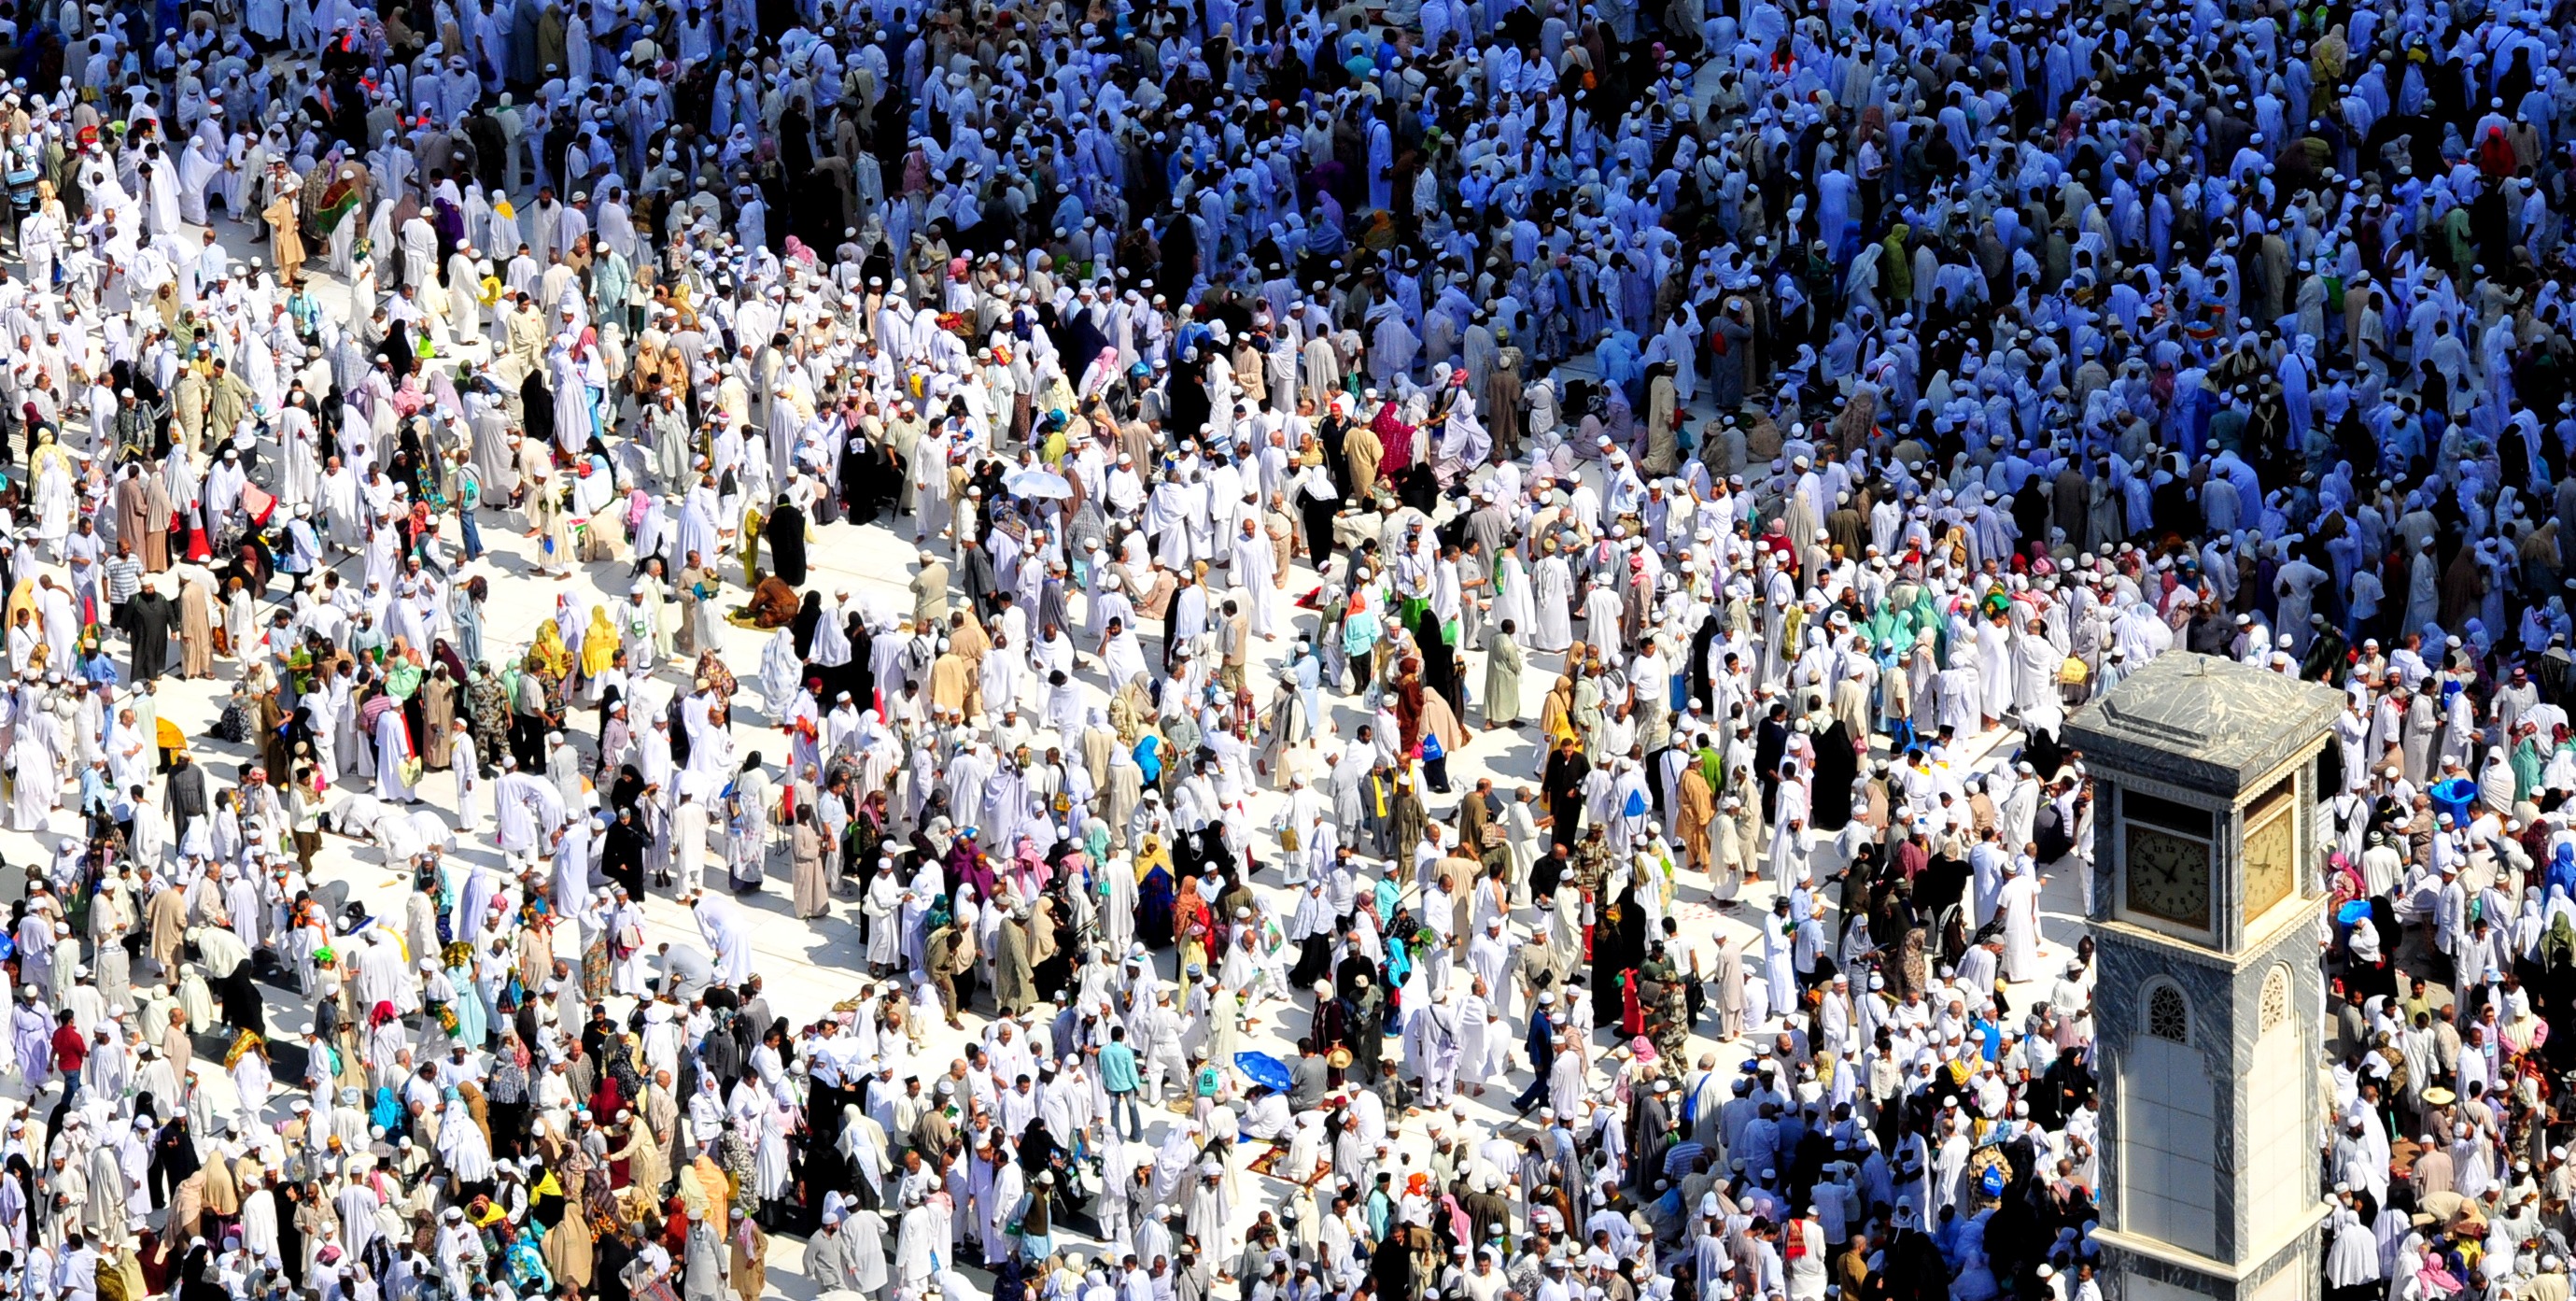 Antes de que los peregrinos se desplacen a otras ciudades para los rituales del Hajj, completan primero el tawaf dando siete vueltas alrededor de la Kaaba. cc Fadi El Binni para Al Jazeera